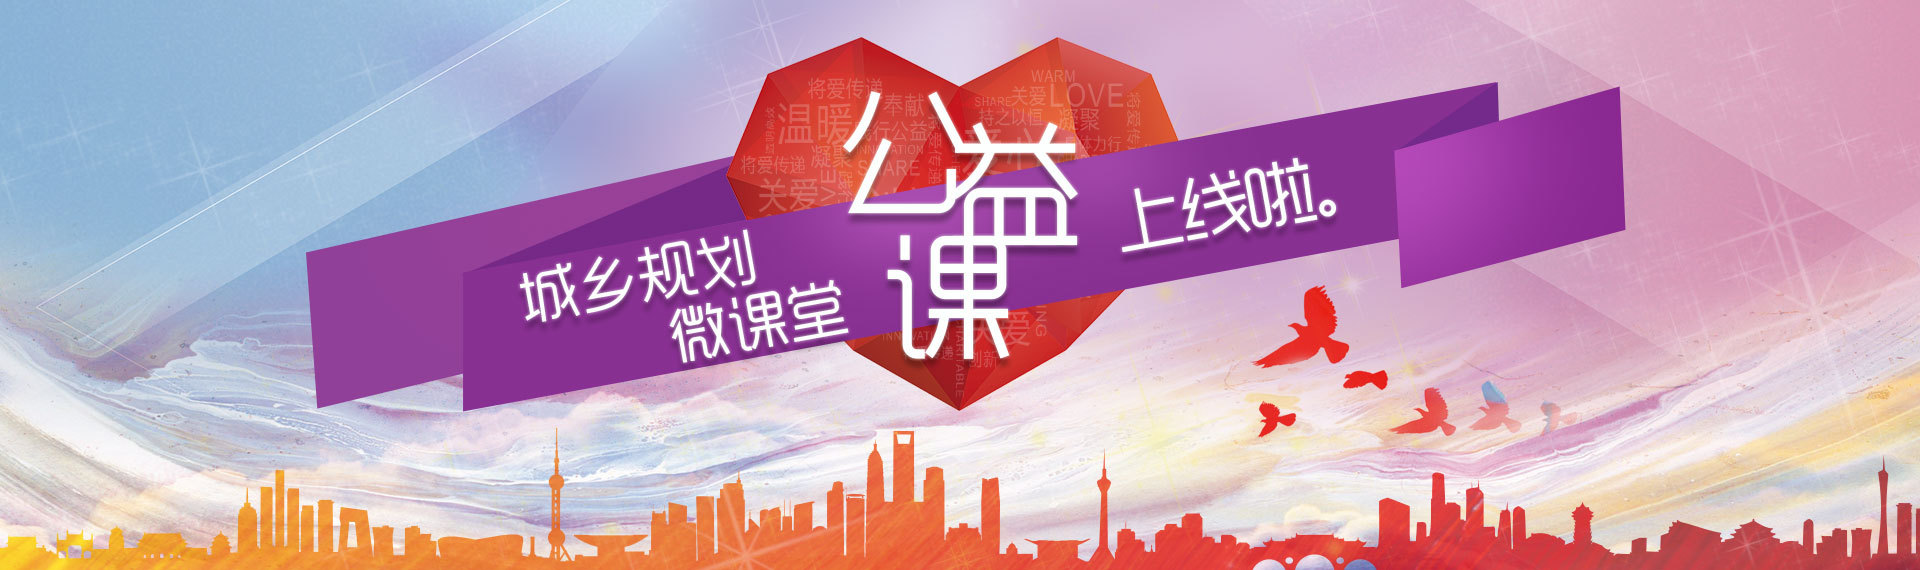 中國城市規劃協會旗下在線教育平臺——城鄉規劃微課堂上線了